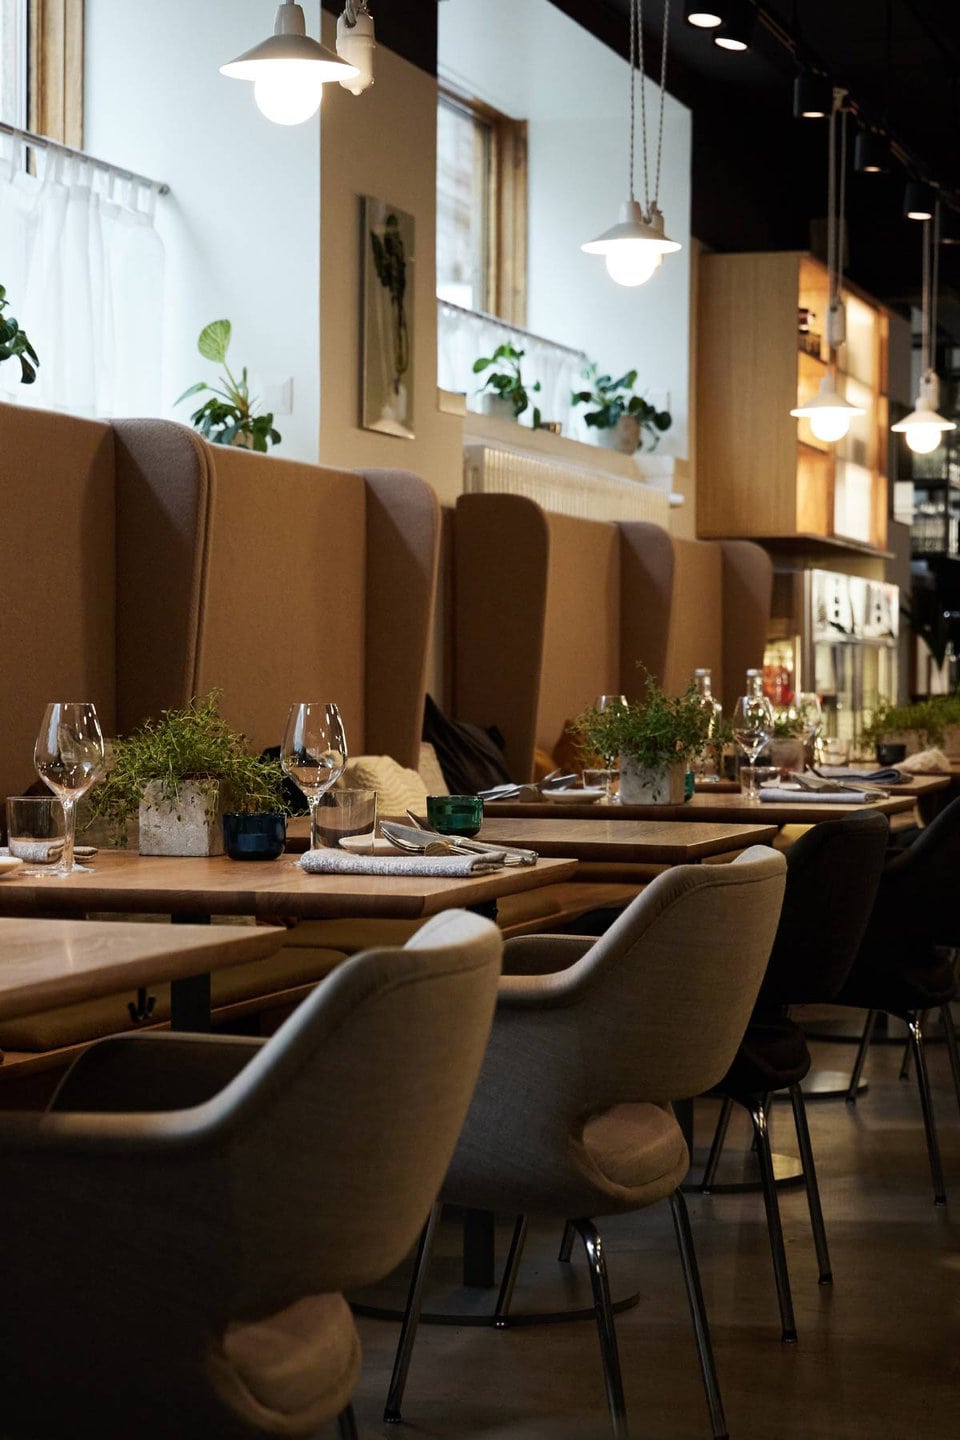 Ein modernes Restaurant-Interieur mit einer Reihe von Tischen mit grauen gepolsterten Stühlen und braunen Sitzecken mit hohen Rückenlehnen. Jeder Tisch ist mit Weingläsern, Tellern und Topfpflanzen gedeckt. Hängelampen an der Decke sorgen für sanfte Beleuchtung.